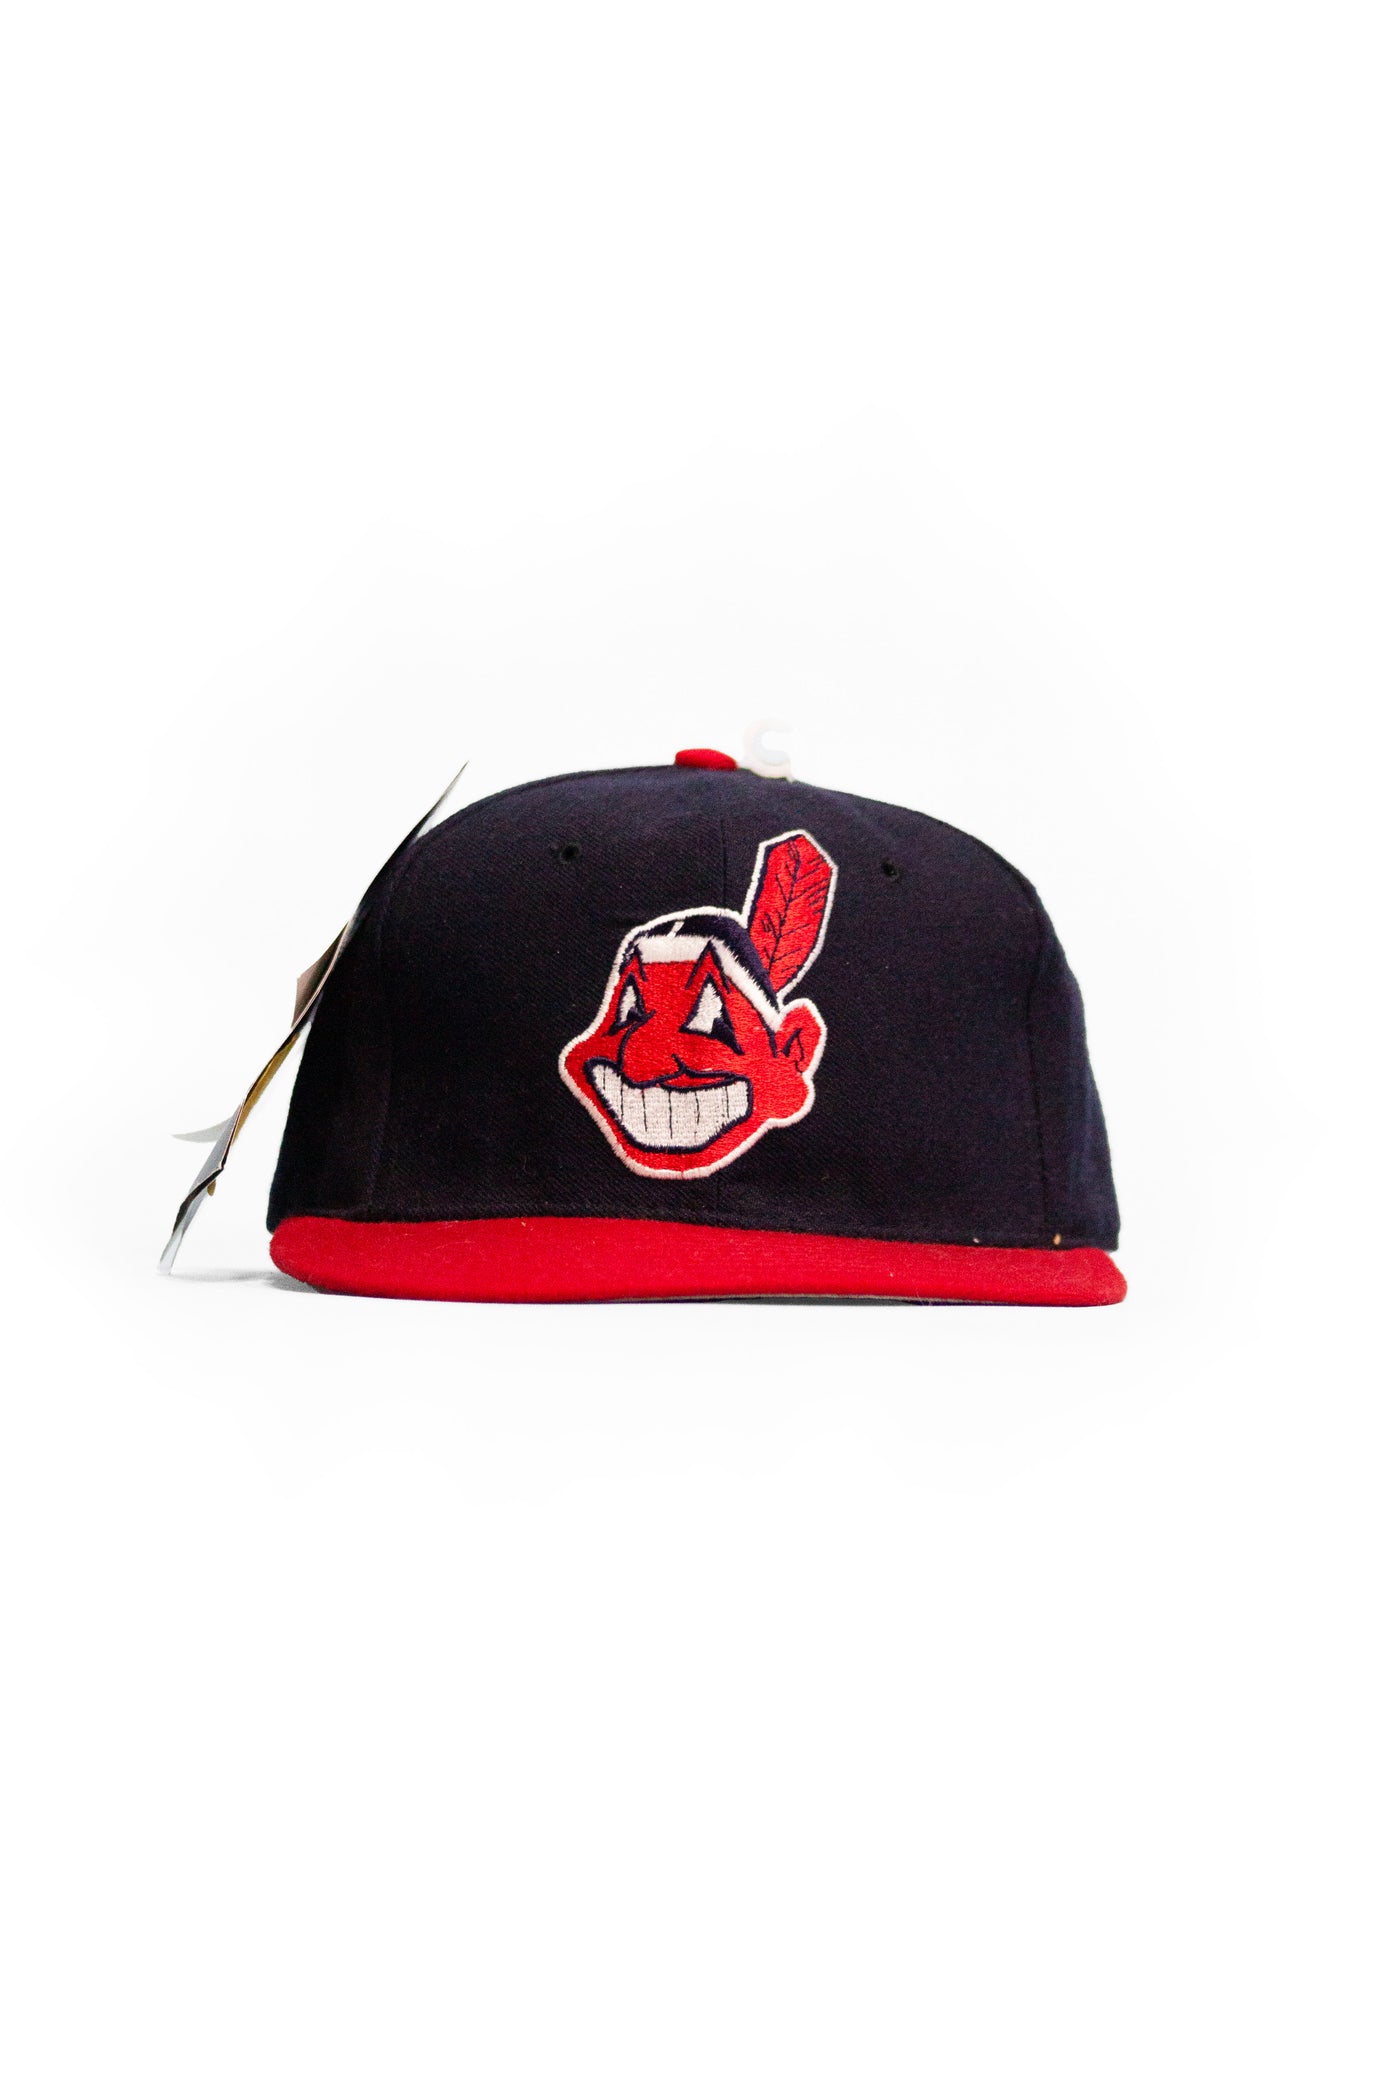 Vintage Cleveland Indians SnapBack hat